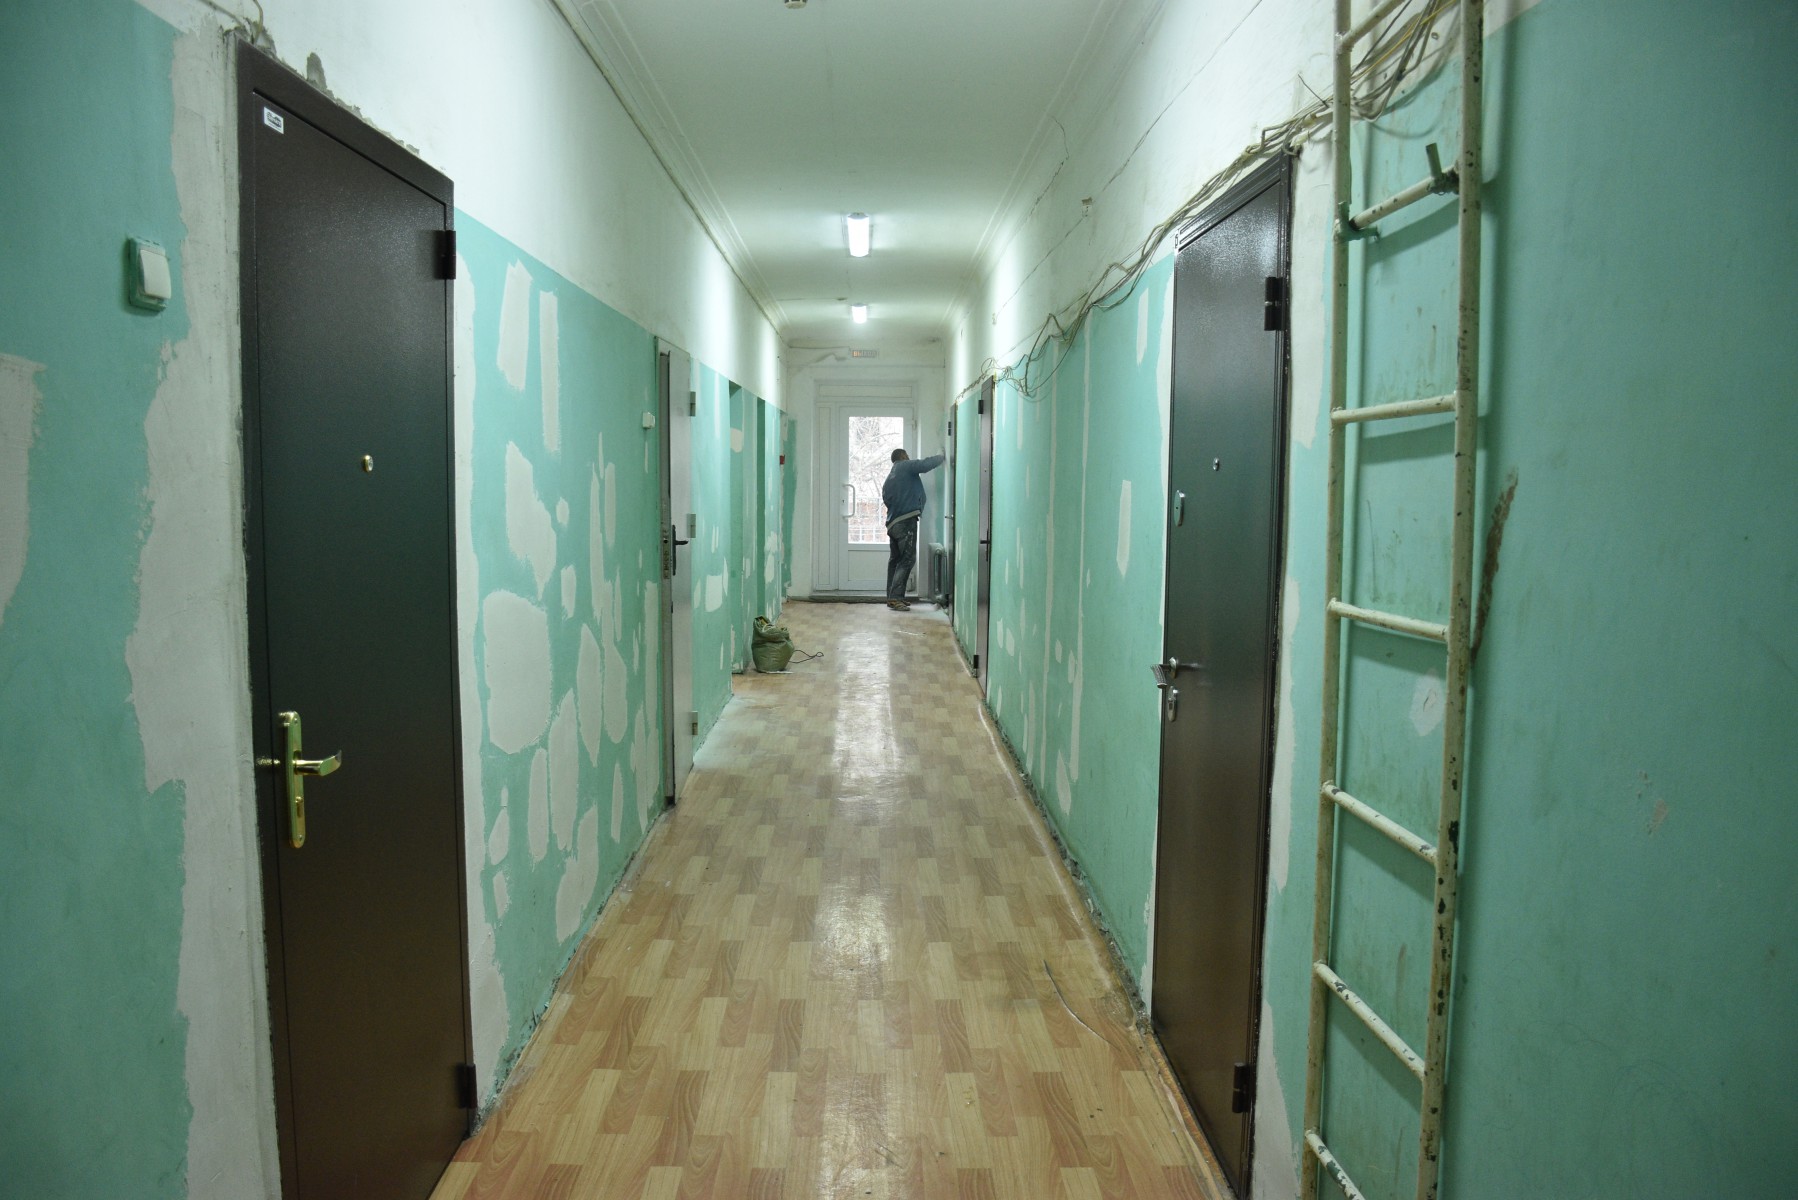 Сейчас в бывшем общежитии идет подготовка стен второго этажа к покраске. Фото Ольги Вертлюговой